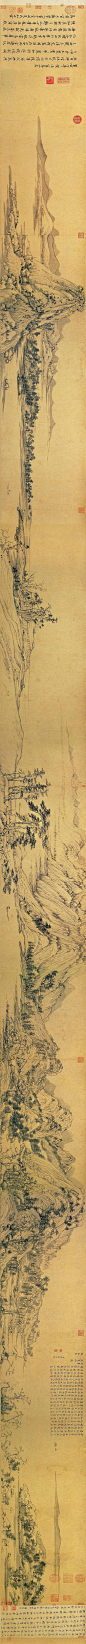 (元)黄公望《富春山居图》长卷 纸本、水墨画，纵33厘米、横639．9厘米，现藏台北故宫博物院。 卷首残存一小段(纵31．8厘米，横51．4厘米)，后人称为《剩山图》，仍保存在黄公望的家乡浙江省博物馆。